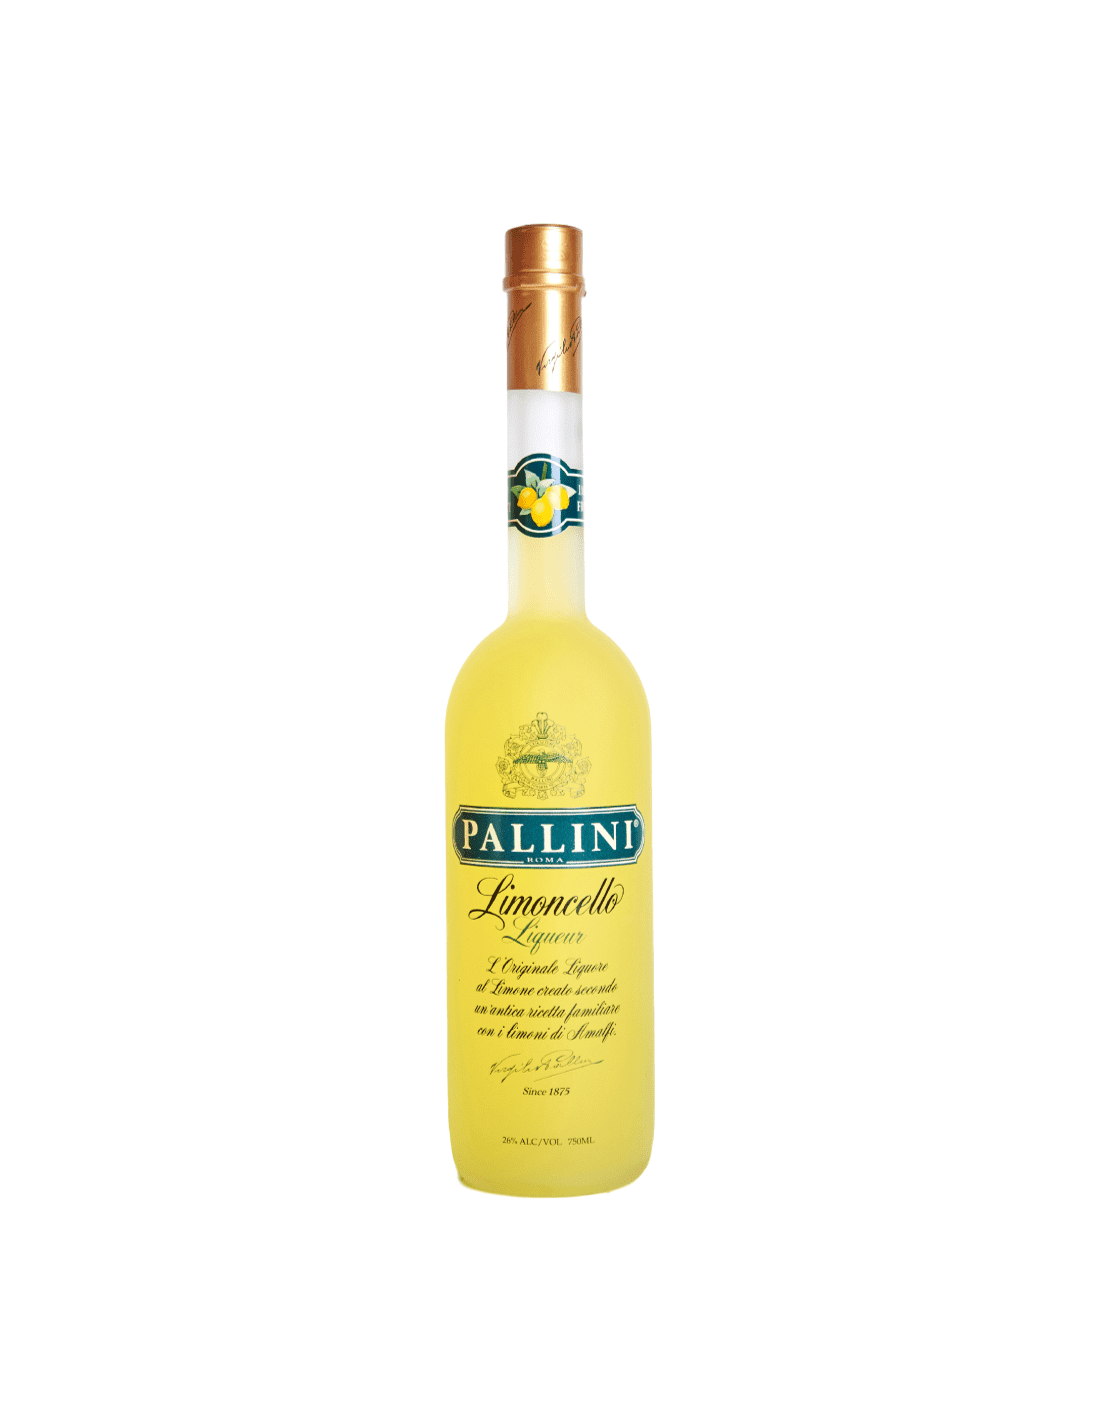 Lichior Pallini Limoncello, 26% alc., 0.5L, Italia alcooldiscount.ro